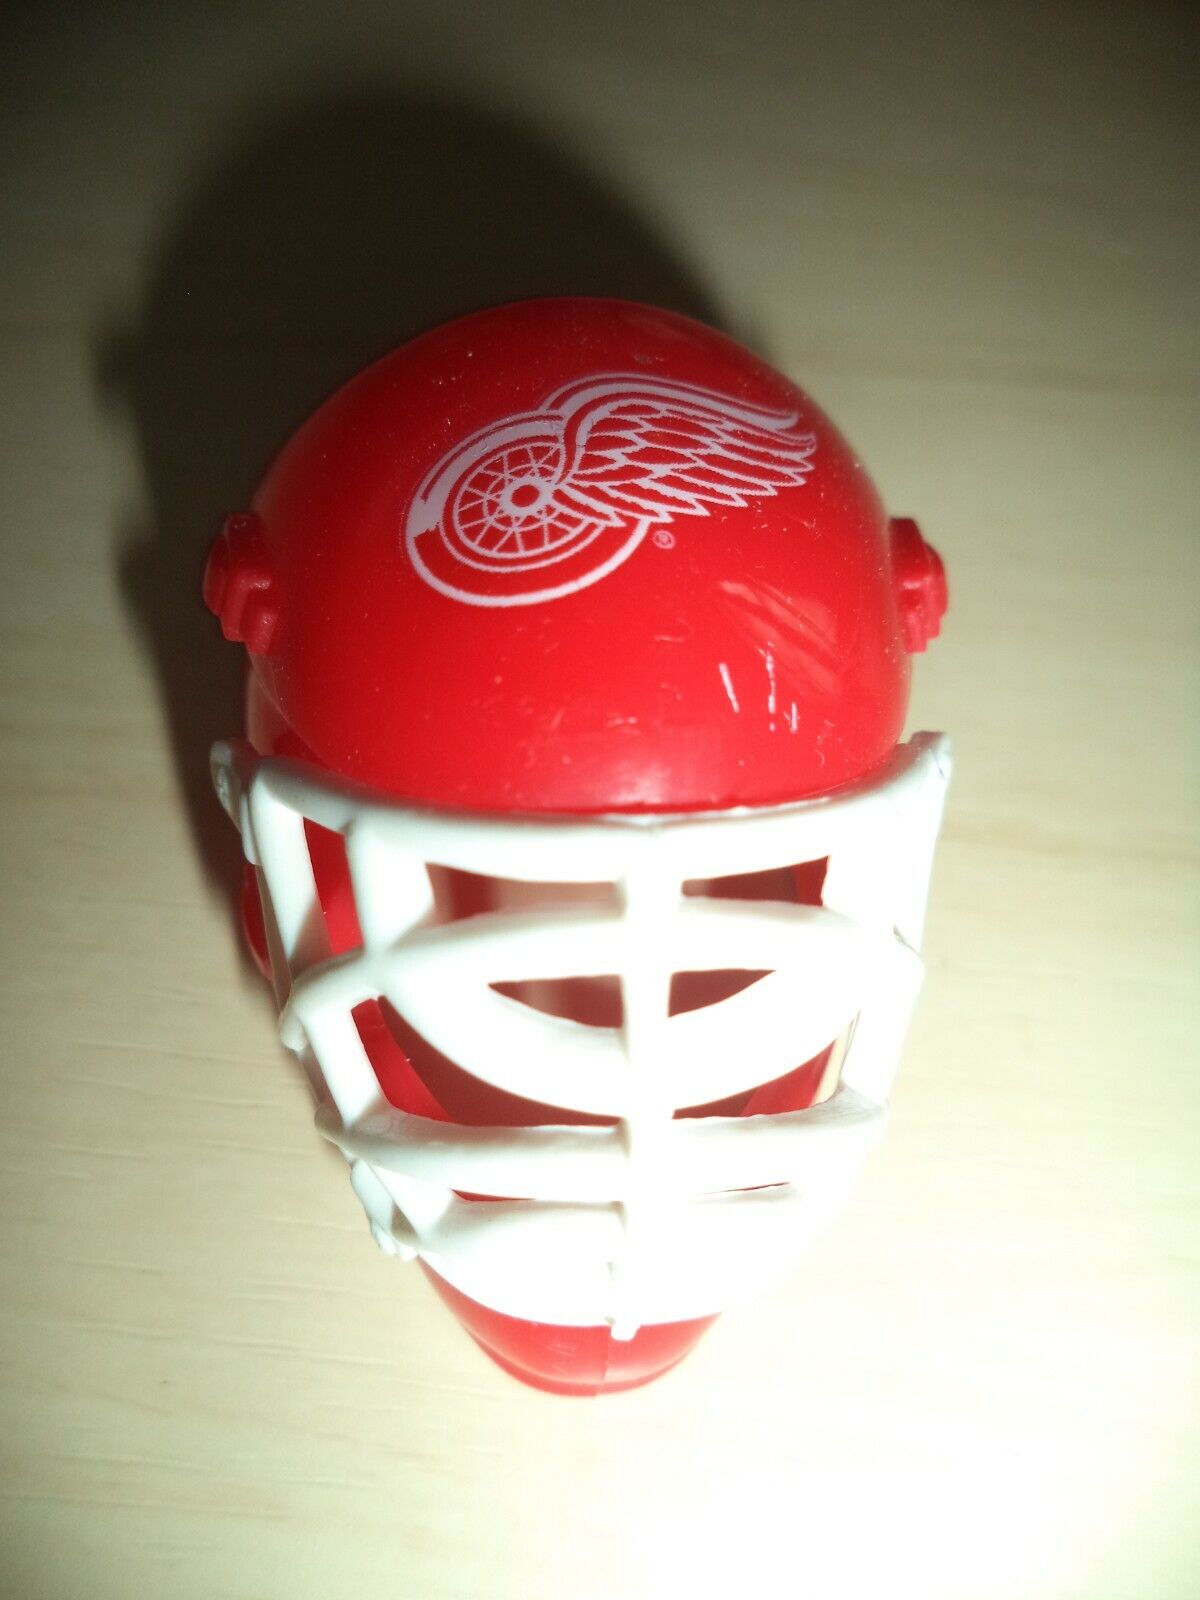 Franklin Detroit Red Wings Mini Goalie Helmet